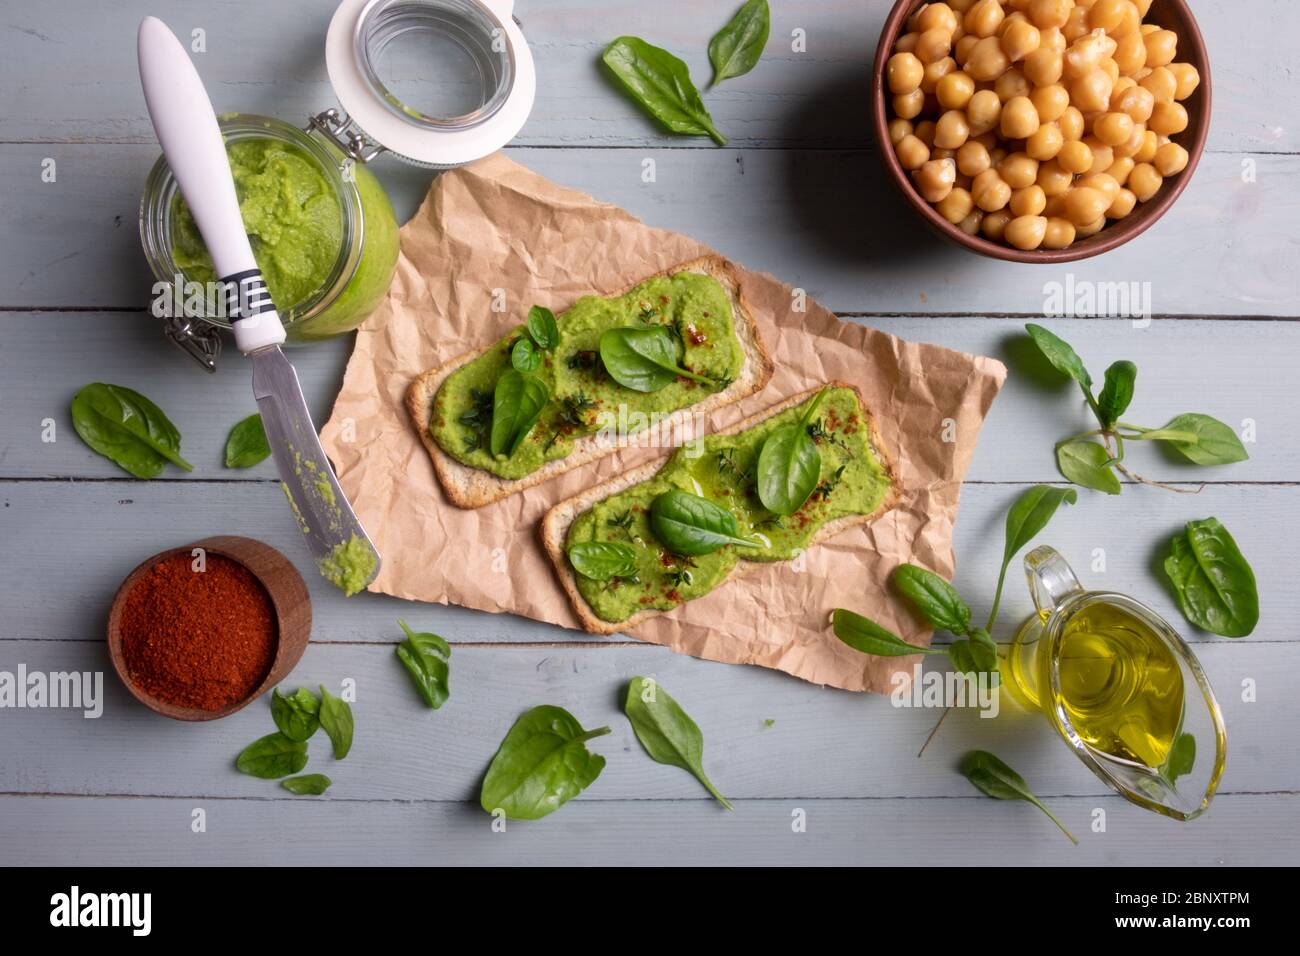 Due cracker con humus di spinaci verdi su tavola di legno. Disposizione piatta. Concetto di hummus. Fotografia di cibo Foto Stock